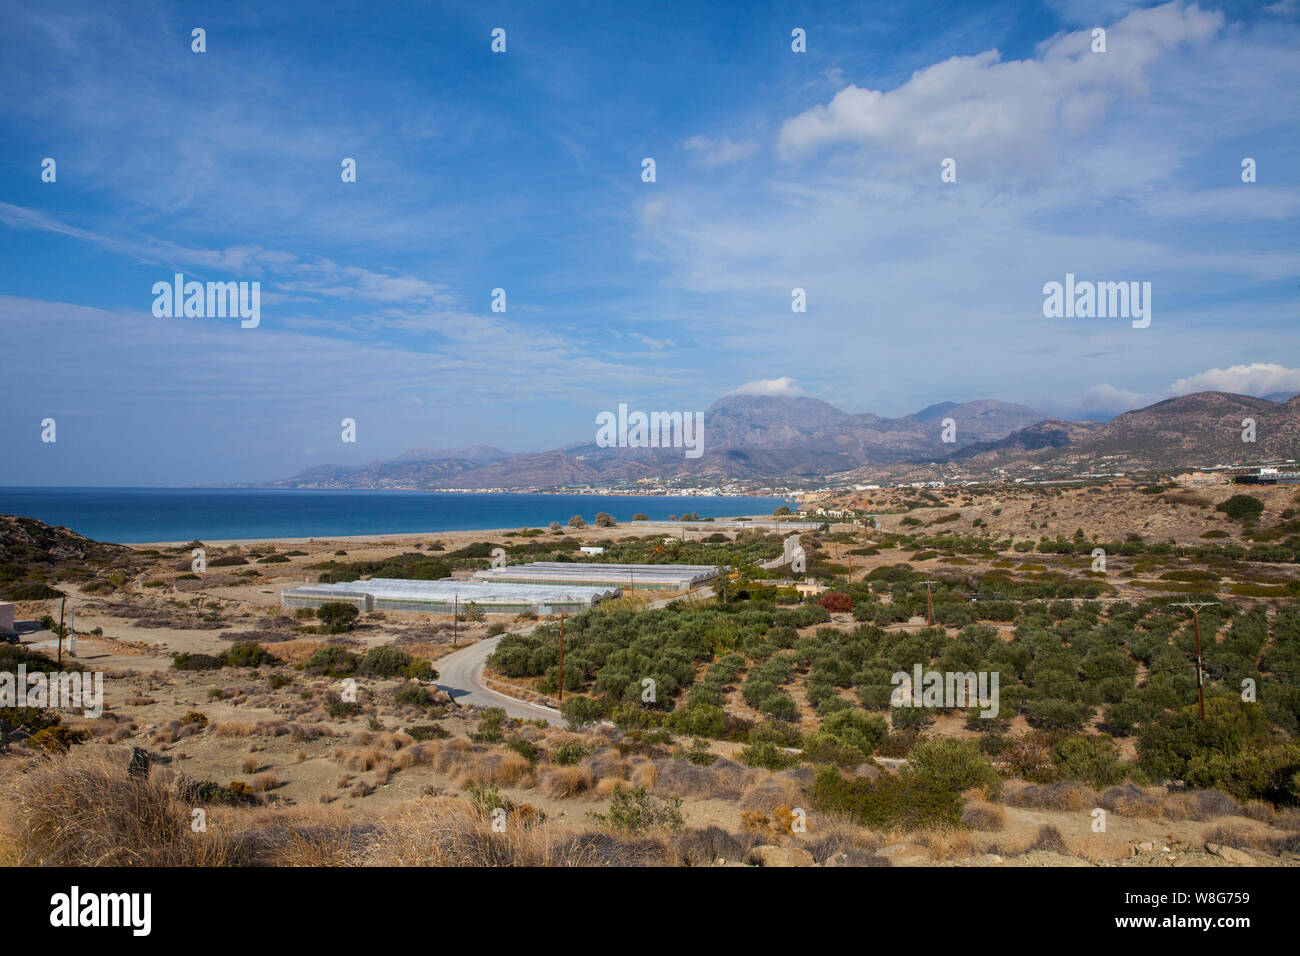 Una immagine di paesaggio orientale di Creta, Grecia Foto Stock